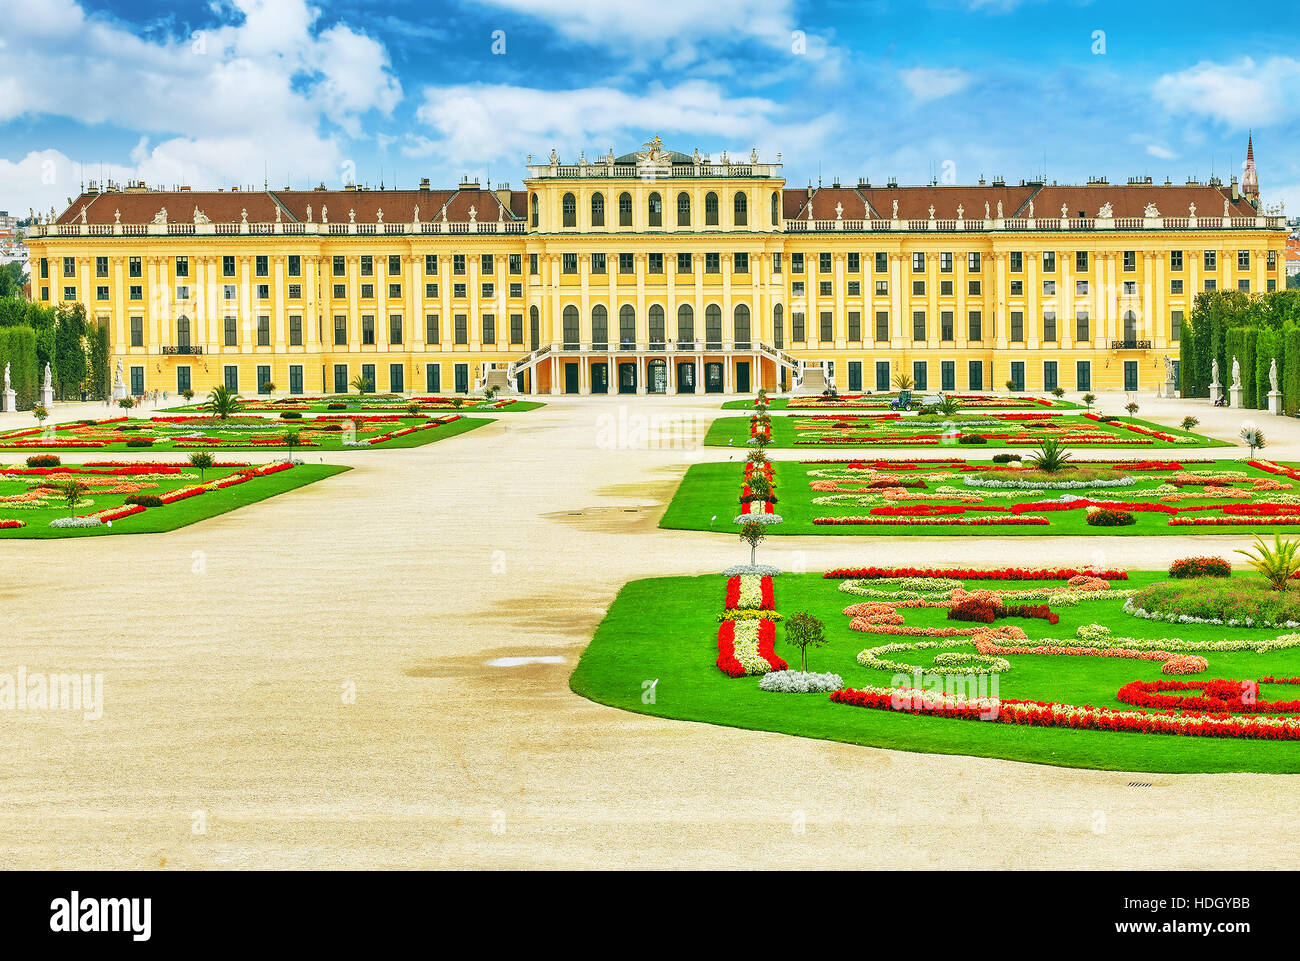 Upper Belvedere. Main palace complex Belvedere.Vienna. Austria. Stock Photo